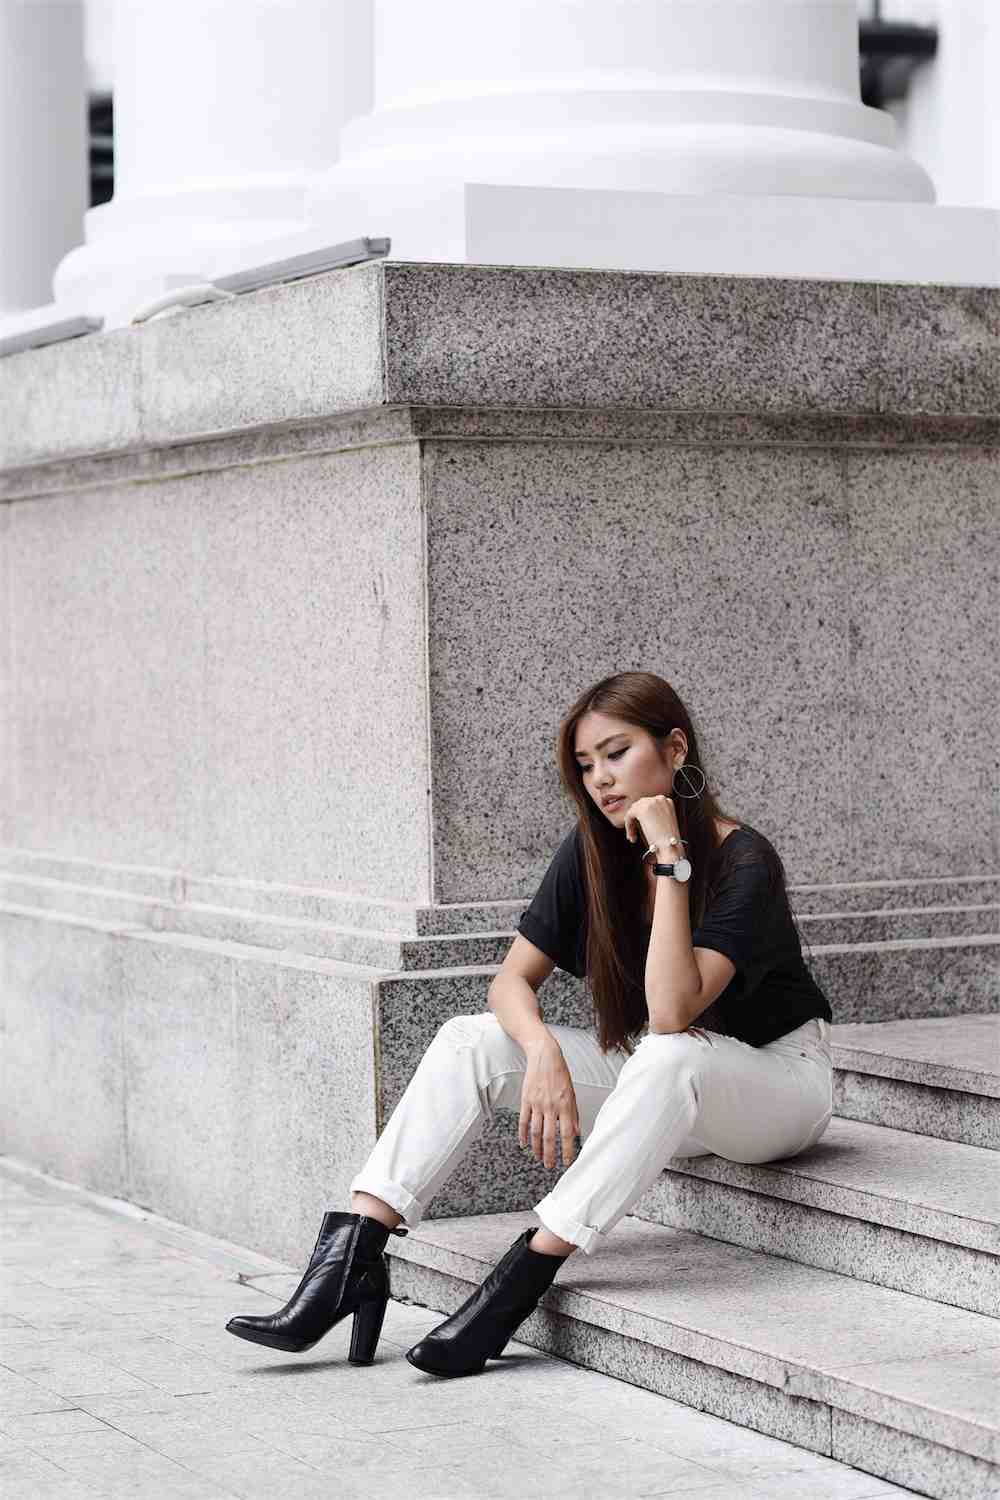 Os jeans da mamãe combinam botins pretos brancos com as tendências da moda feminina 2019